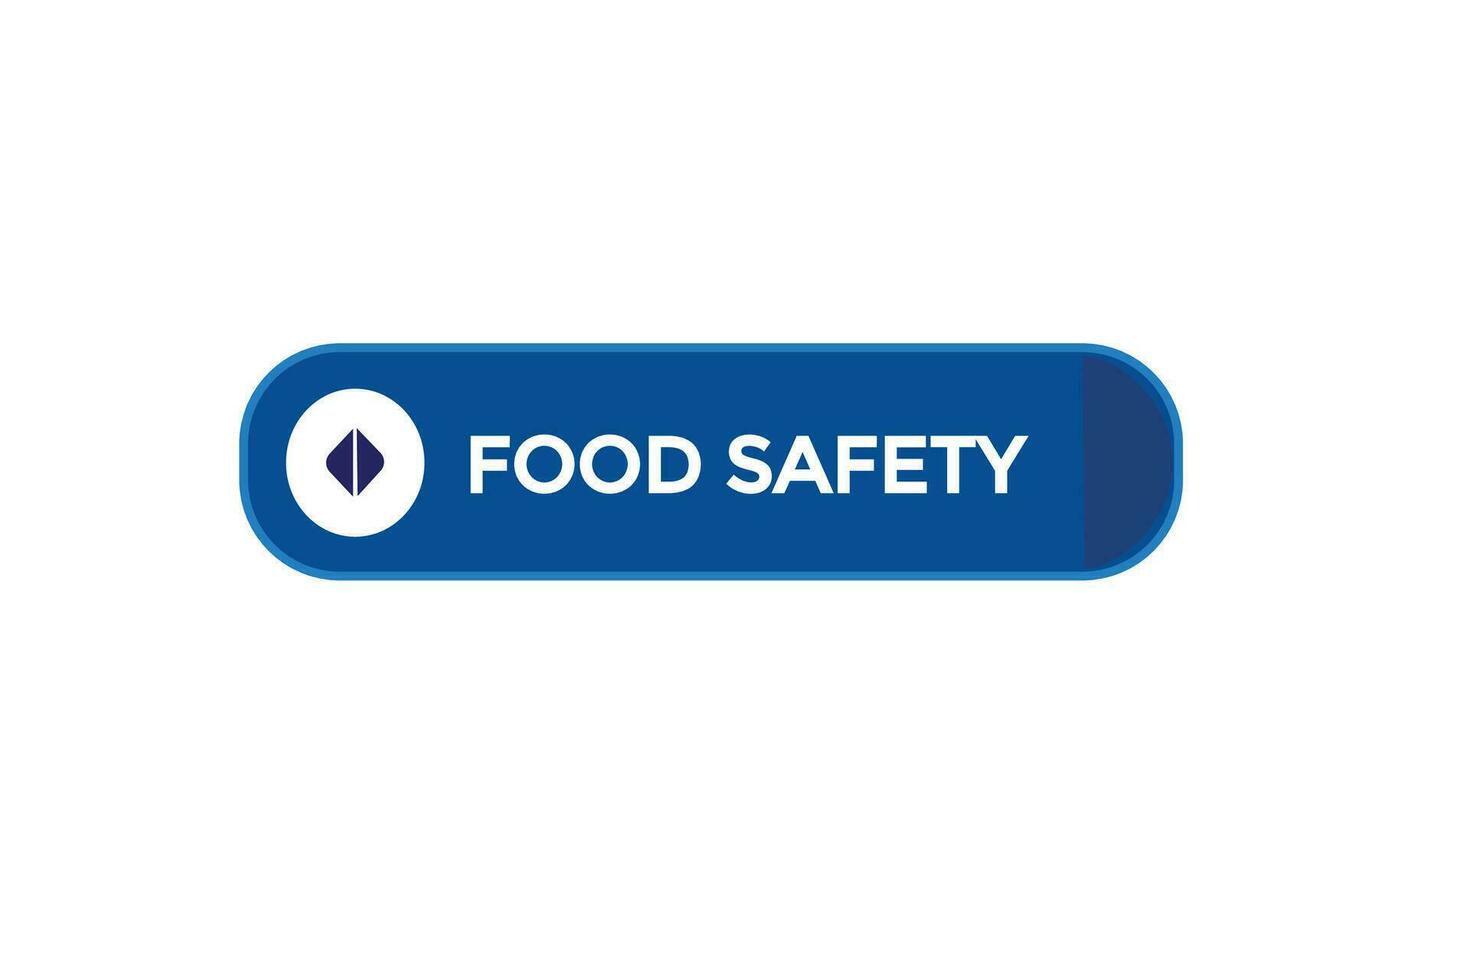 nuovo cibo sicurezza sito web, clic pulsante, livello, cartello, discorso, bolla striscione, vettore